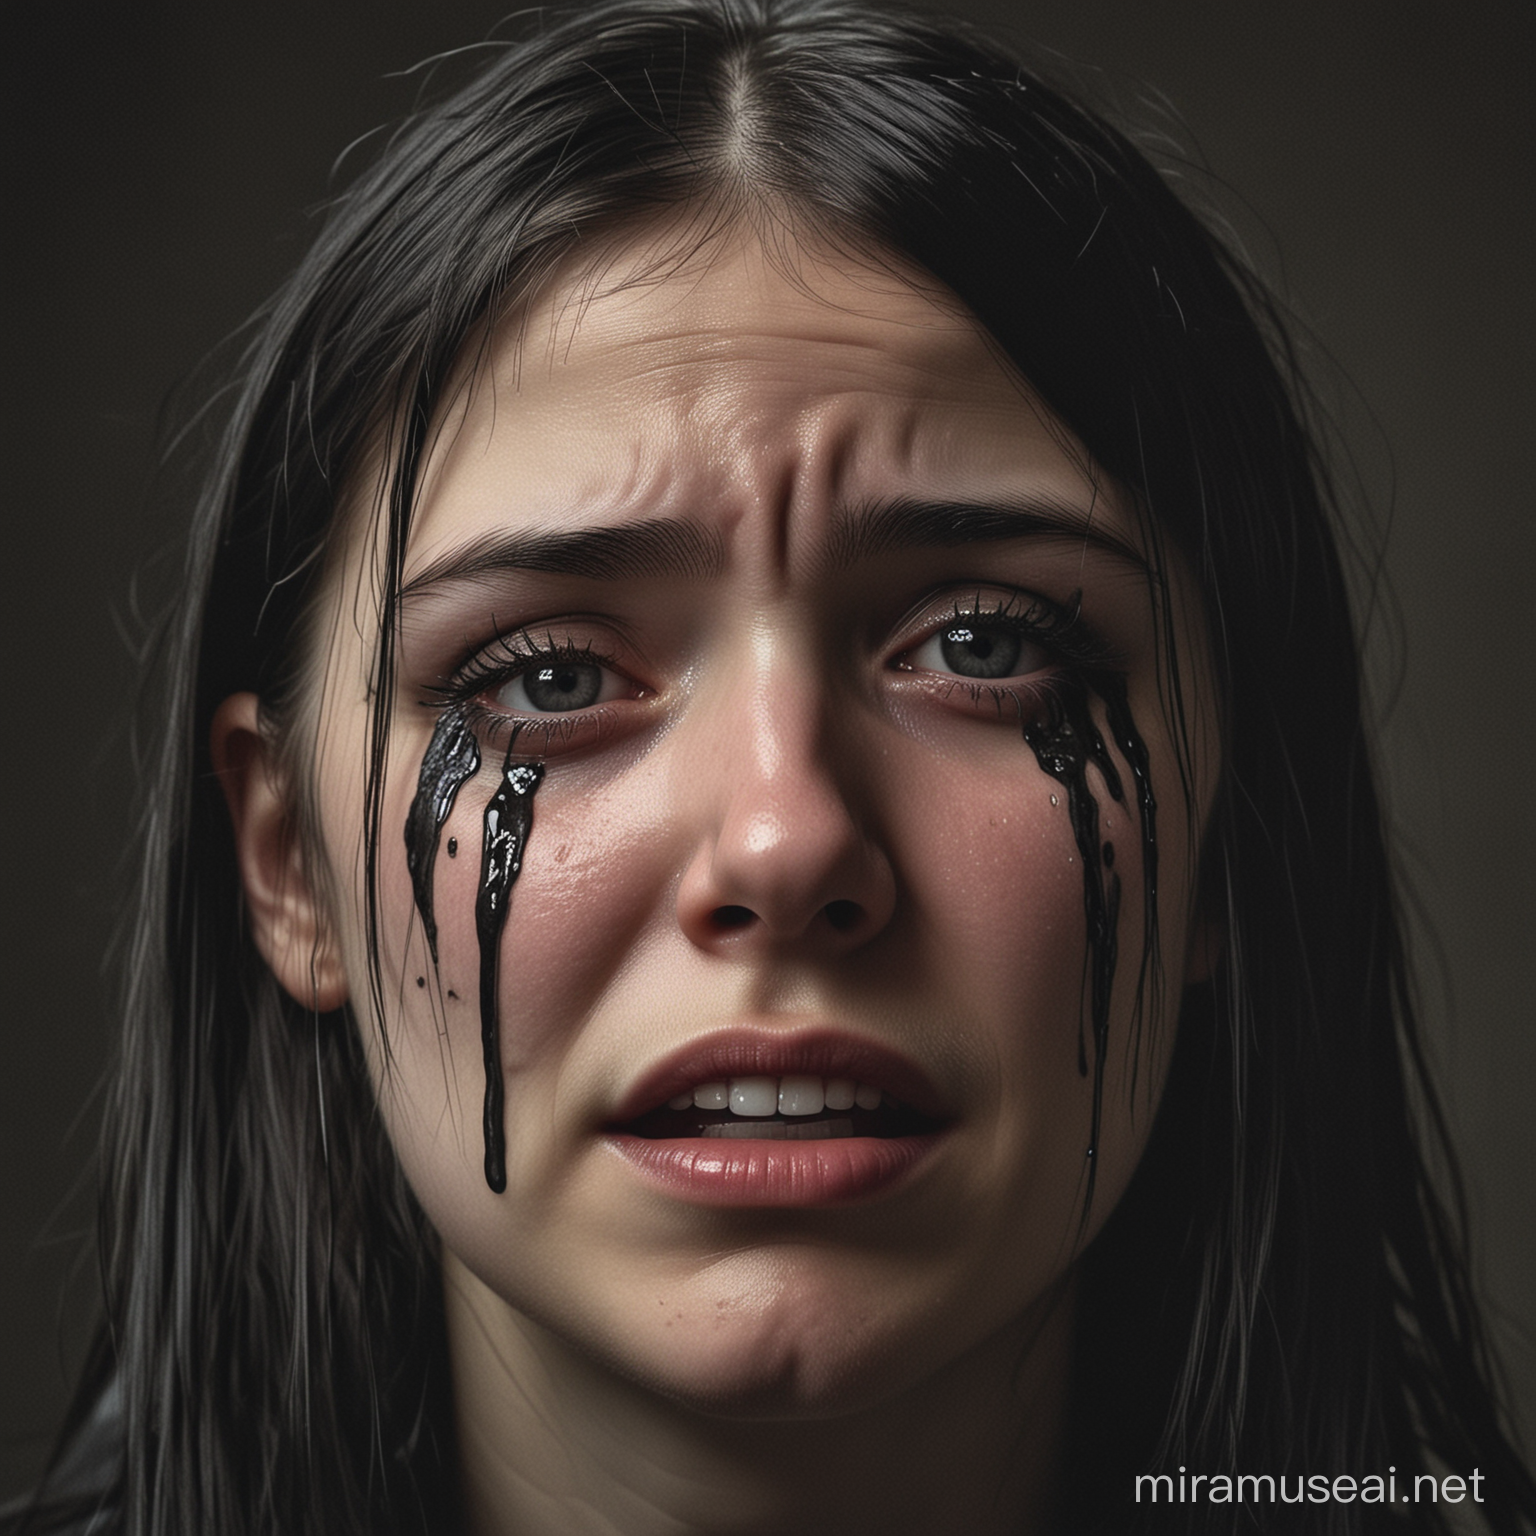 Portrait de petite fille gothique 13 ans pleurant avec des larmes qui coulent sur ses joues.